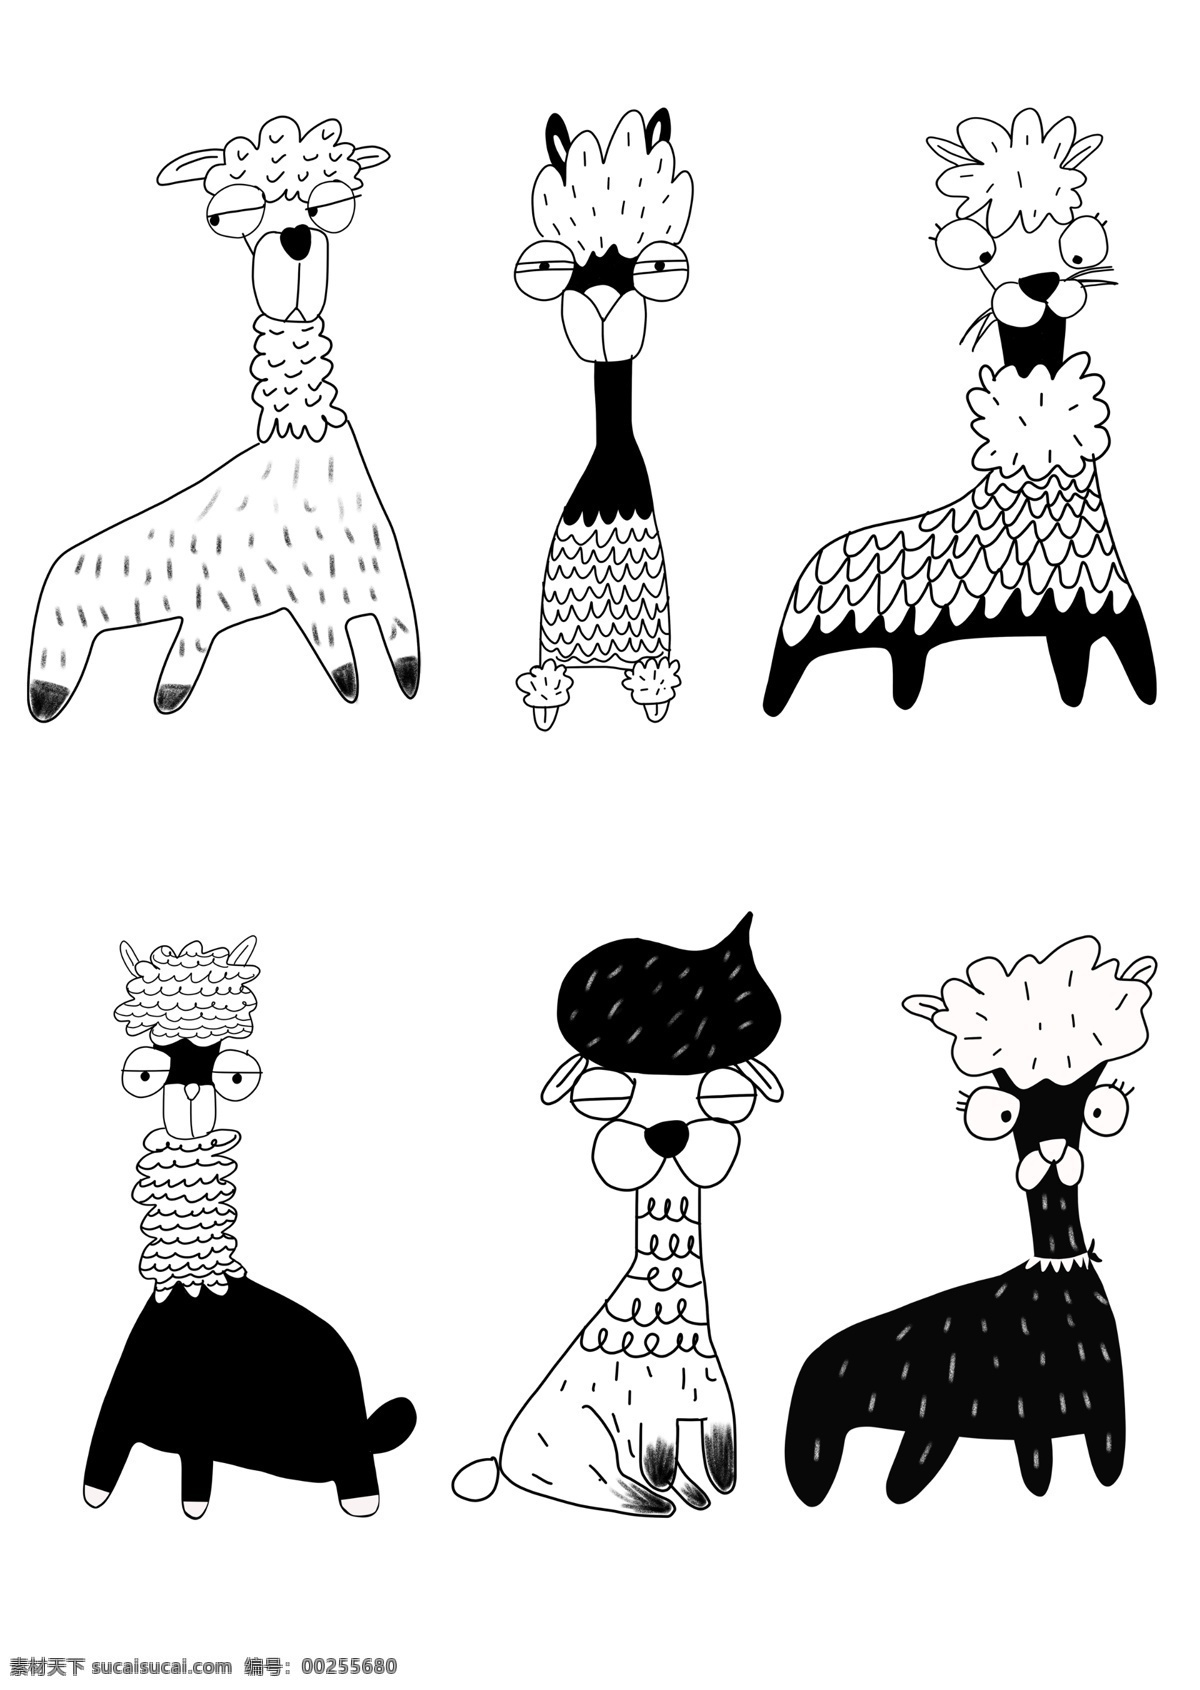 手绘 黑白 简约 可爱 动物 元素 羊 驼 插画 套 图 涂鸦 动物元素 羊驼插画 羊驼 手账 儿童画